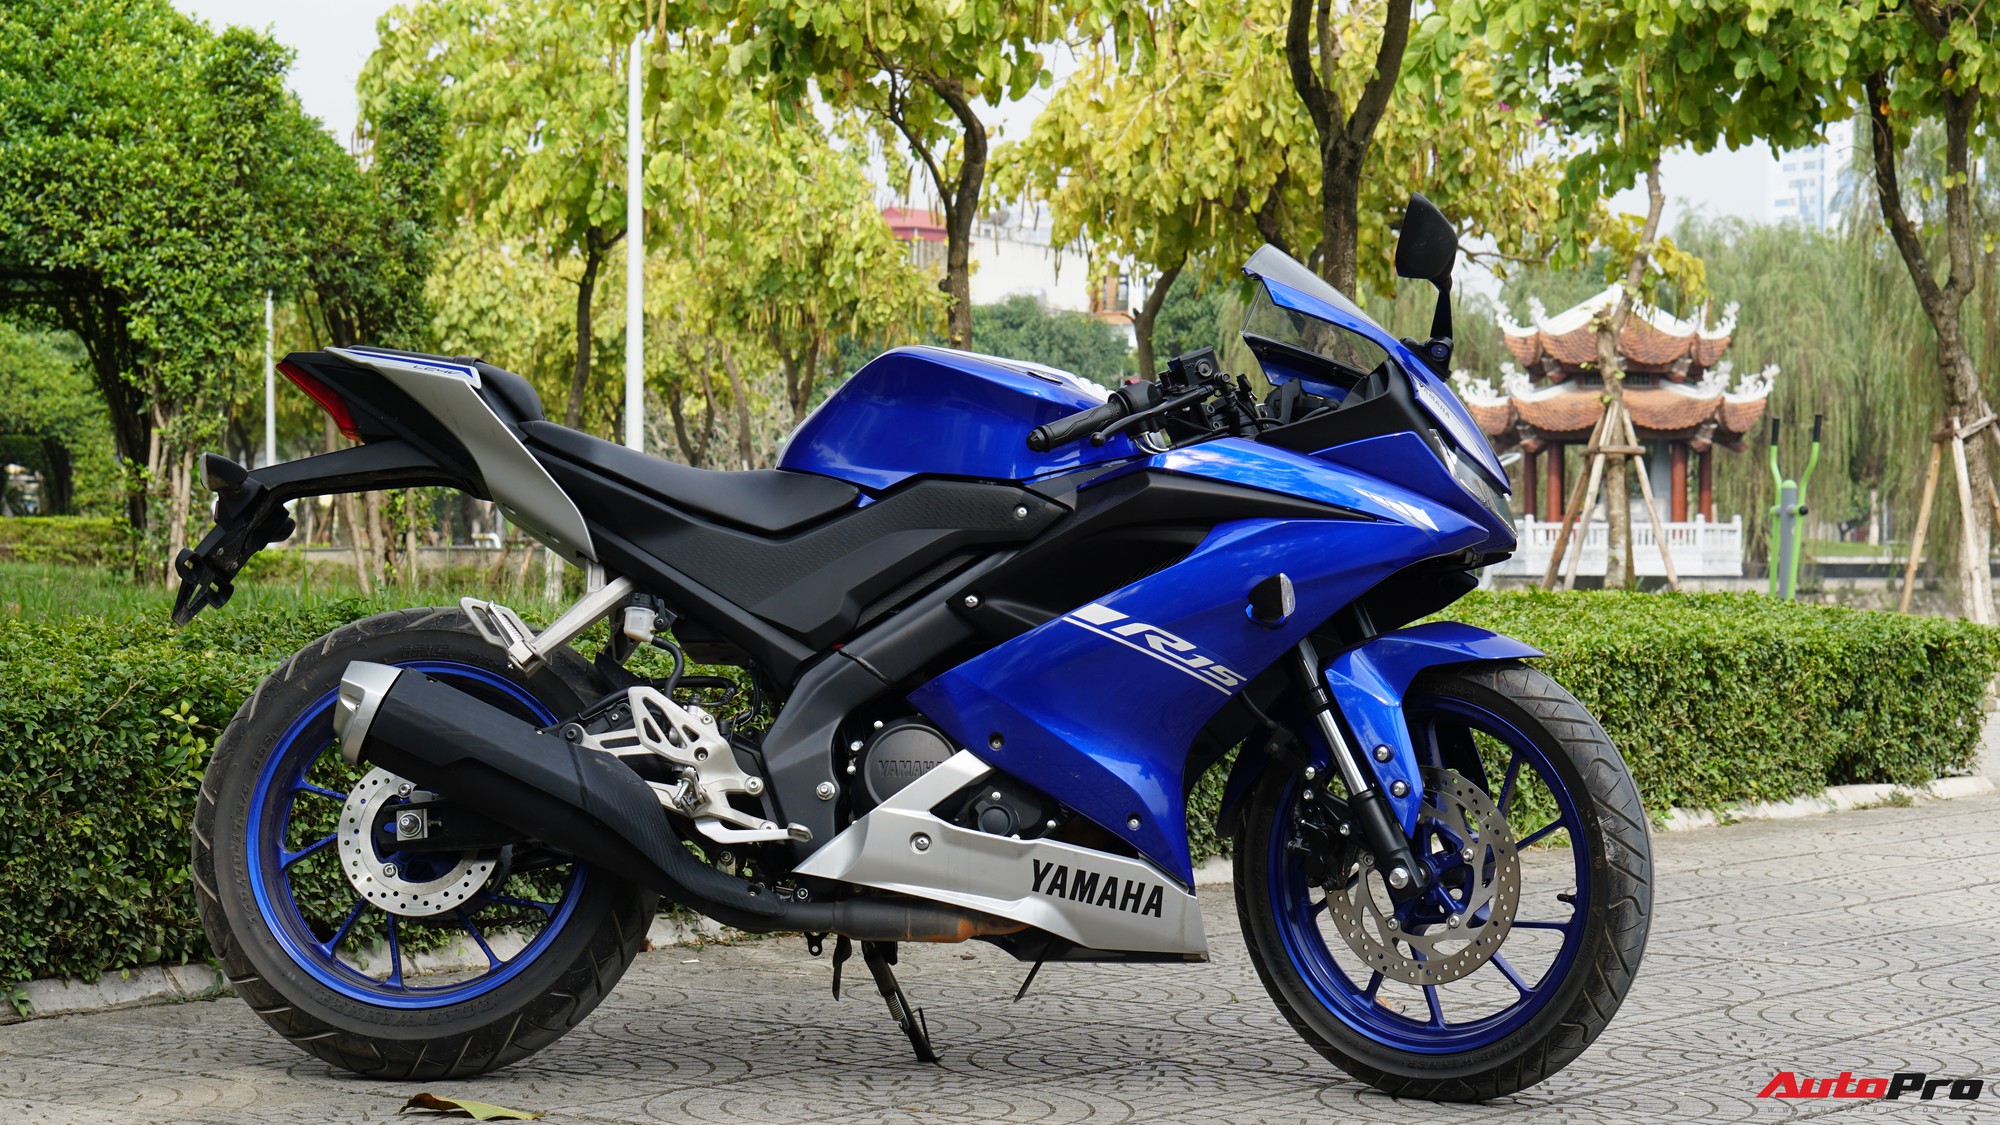 Đánh giá Yamaha R15 sau một tuần sử dụng: Sportbike đáng mua